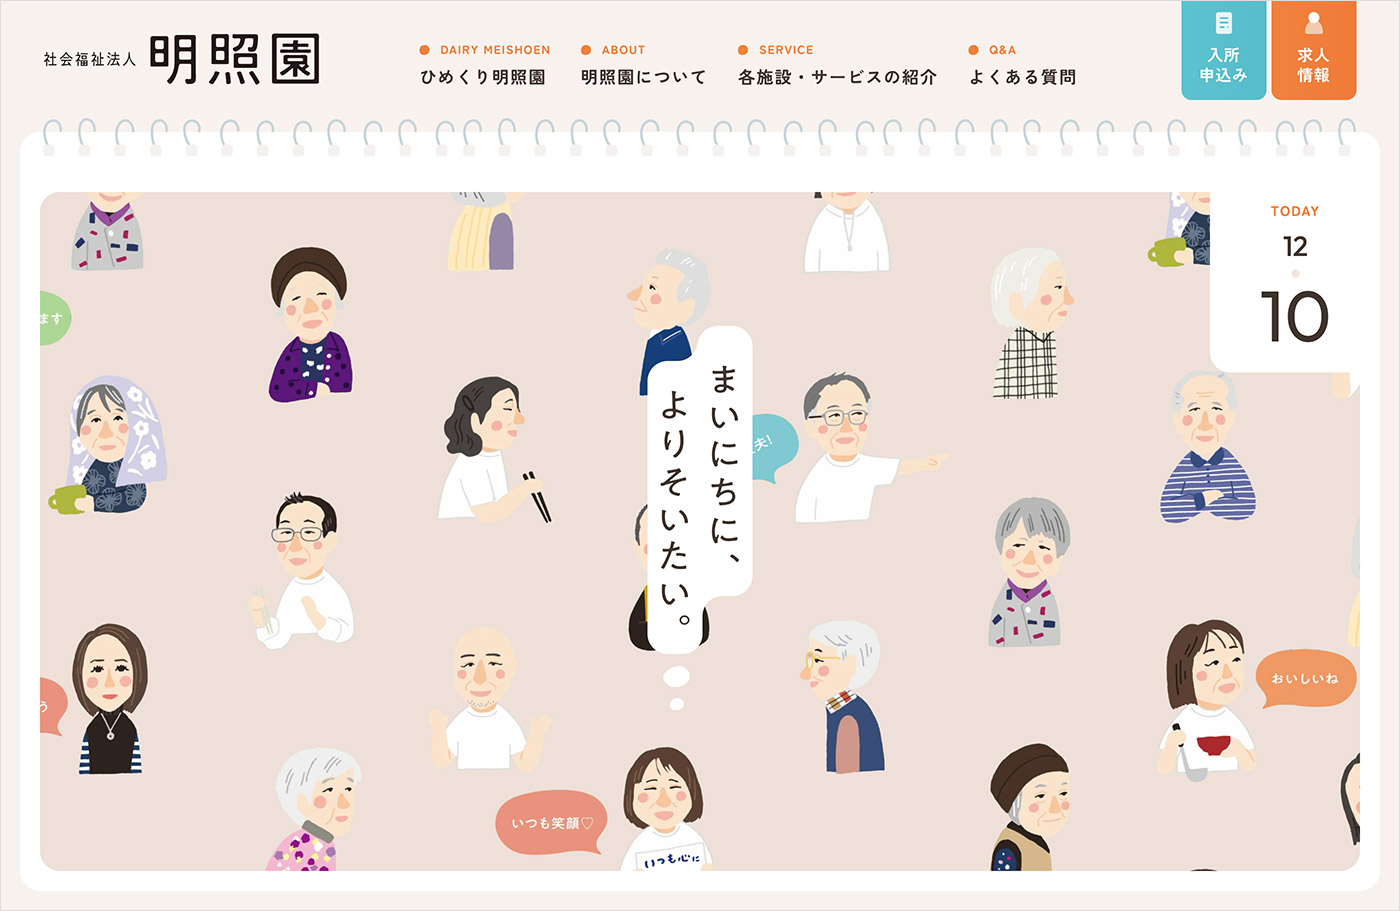 社会福祉法人 明照園 | 熊本県天草市の特別養護老人ホームウェブサイトの画面キャプチャ画像